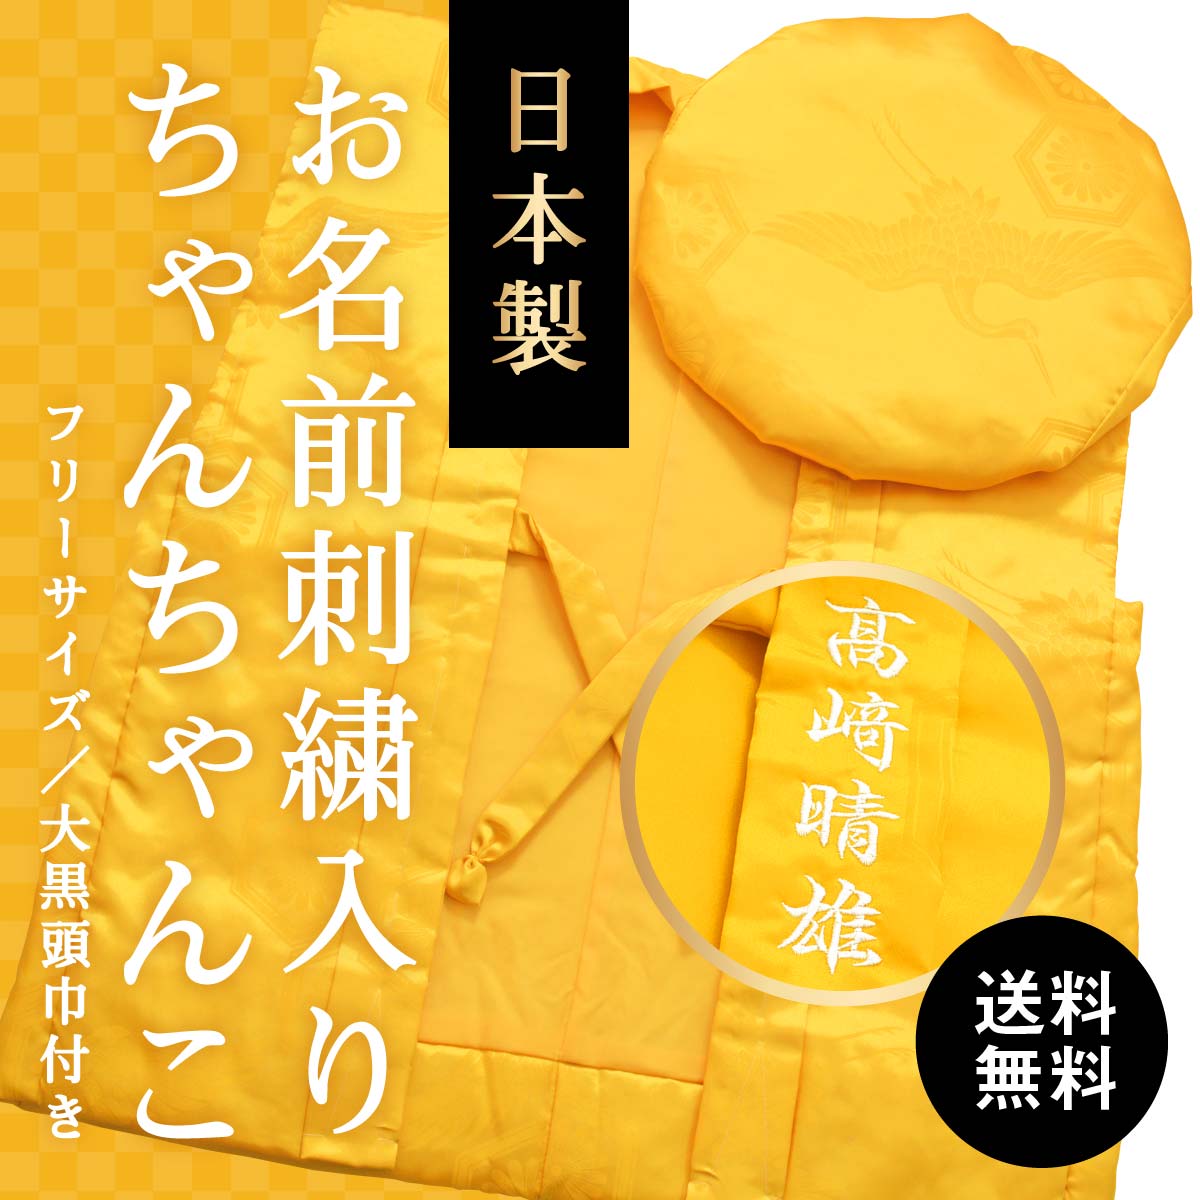 送料無料 日本製 お名前刺繍入り黄色ちゃんちゃんこ